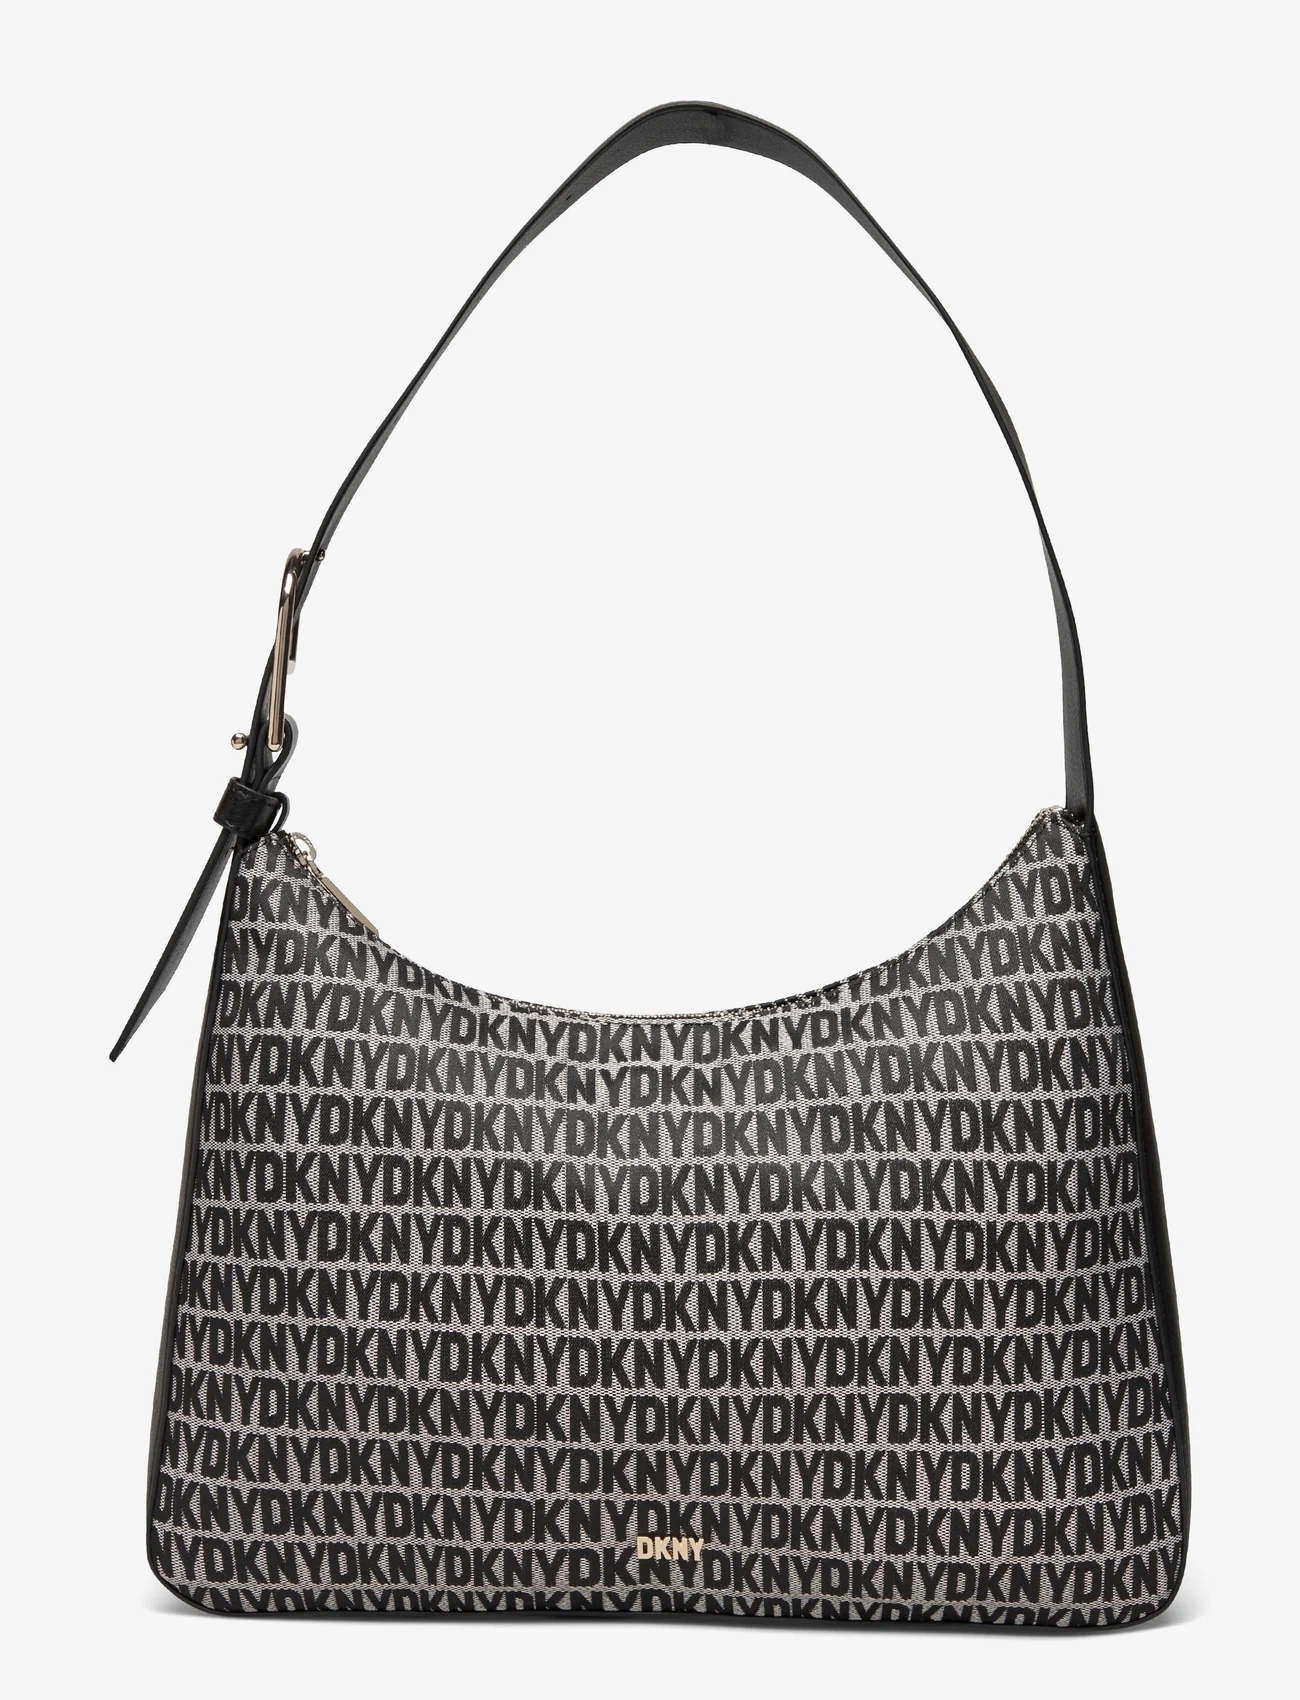 DKNY Bags - DEENA HOBO - ballīšu apģērbs par outlet cenām - xlb - bk logo-bk - 0